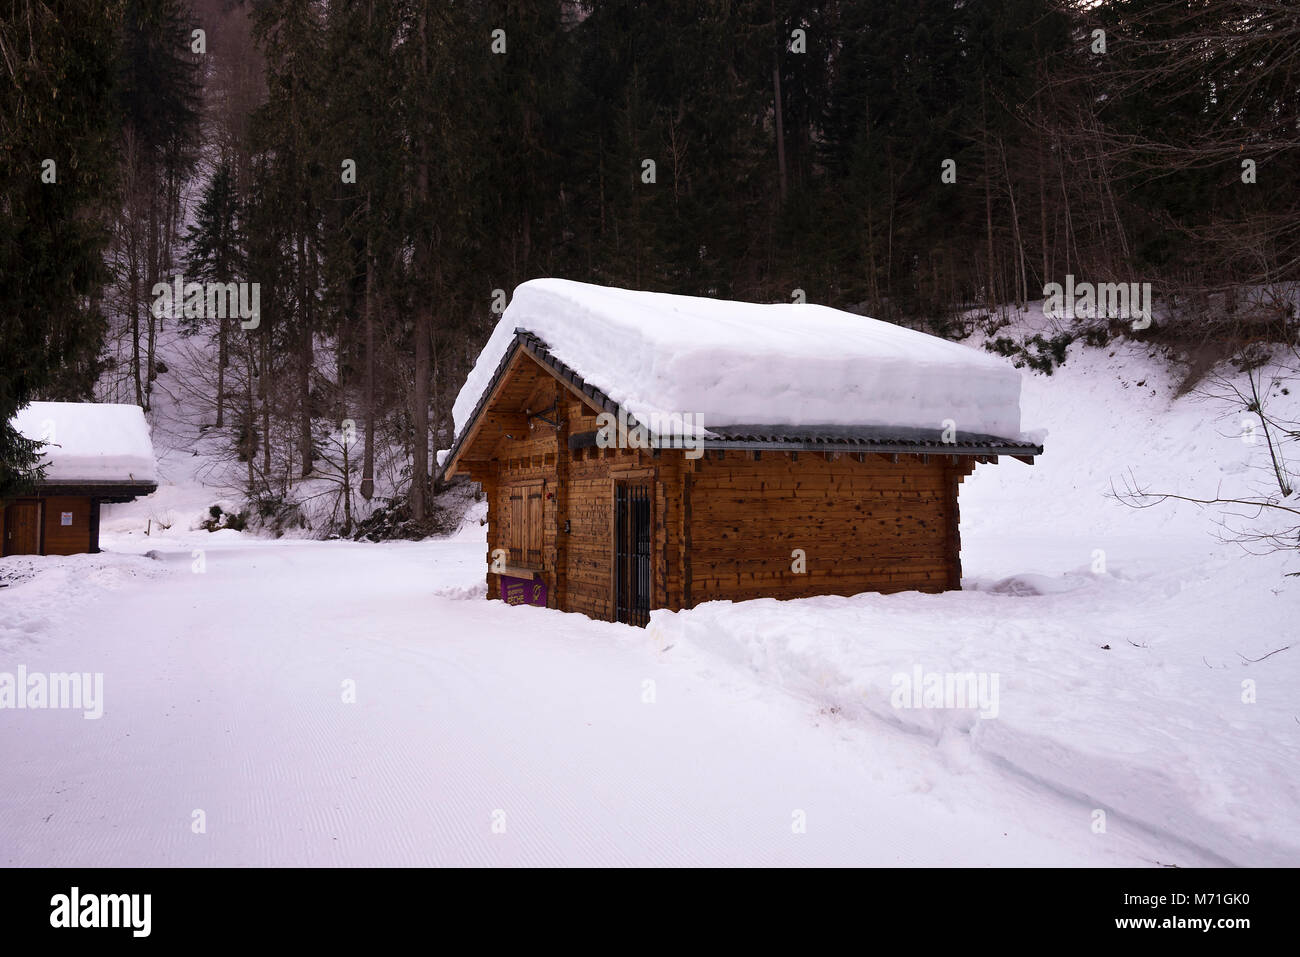 Tiefer Schnee bedeckt das Dach einer Hütte auf einem Trail am Lac de in der Nähe von Morzine Montriond Haute Savoie Portes du Soleil Frankreich Stockfoto